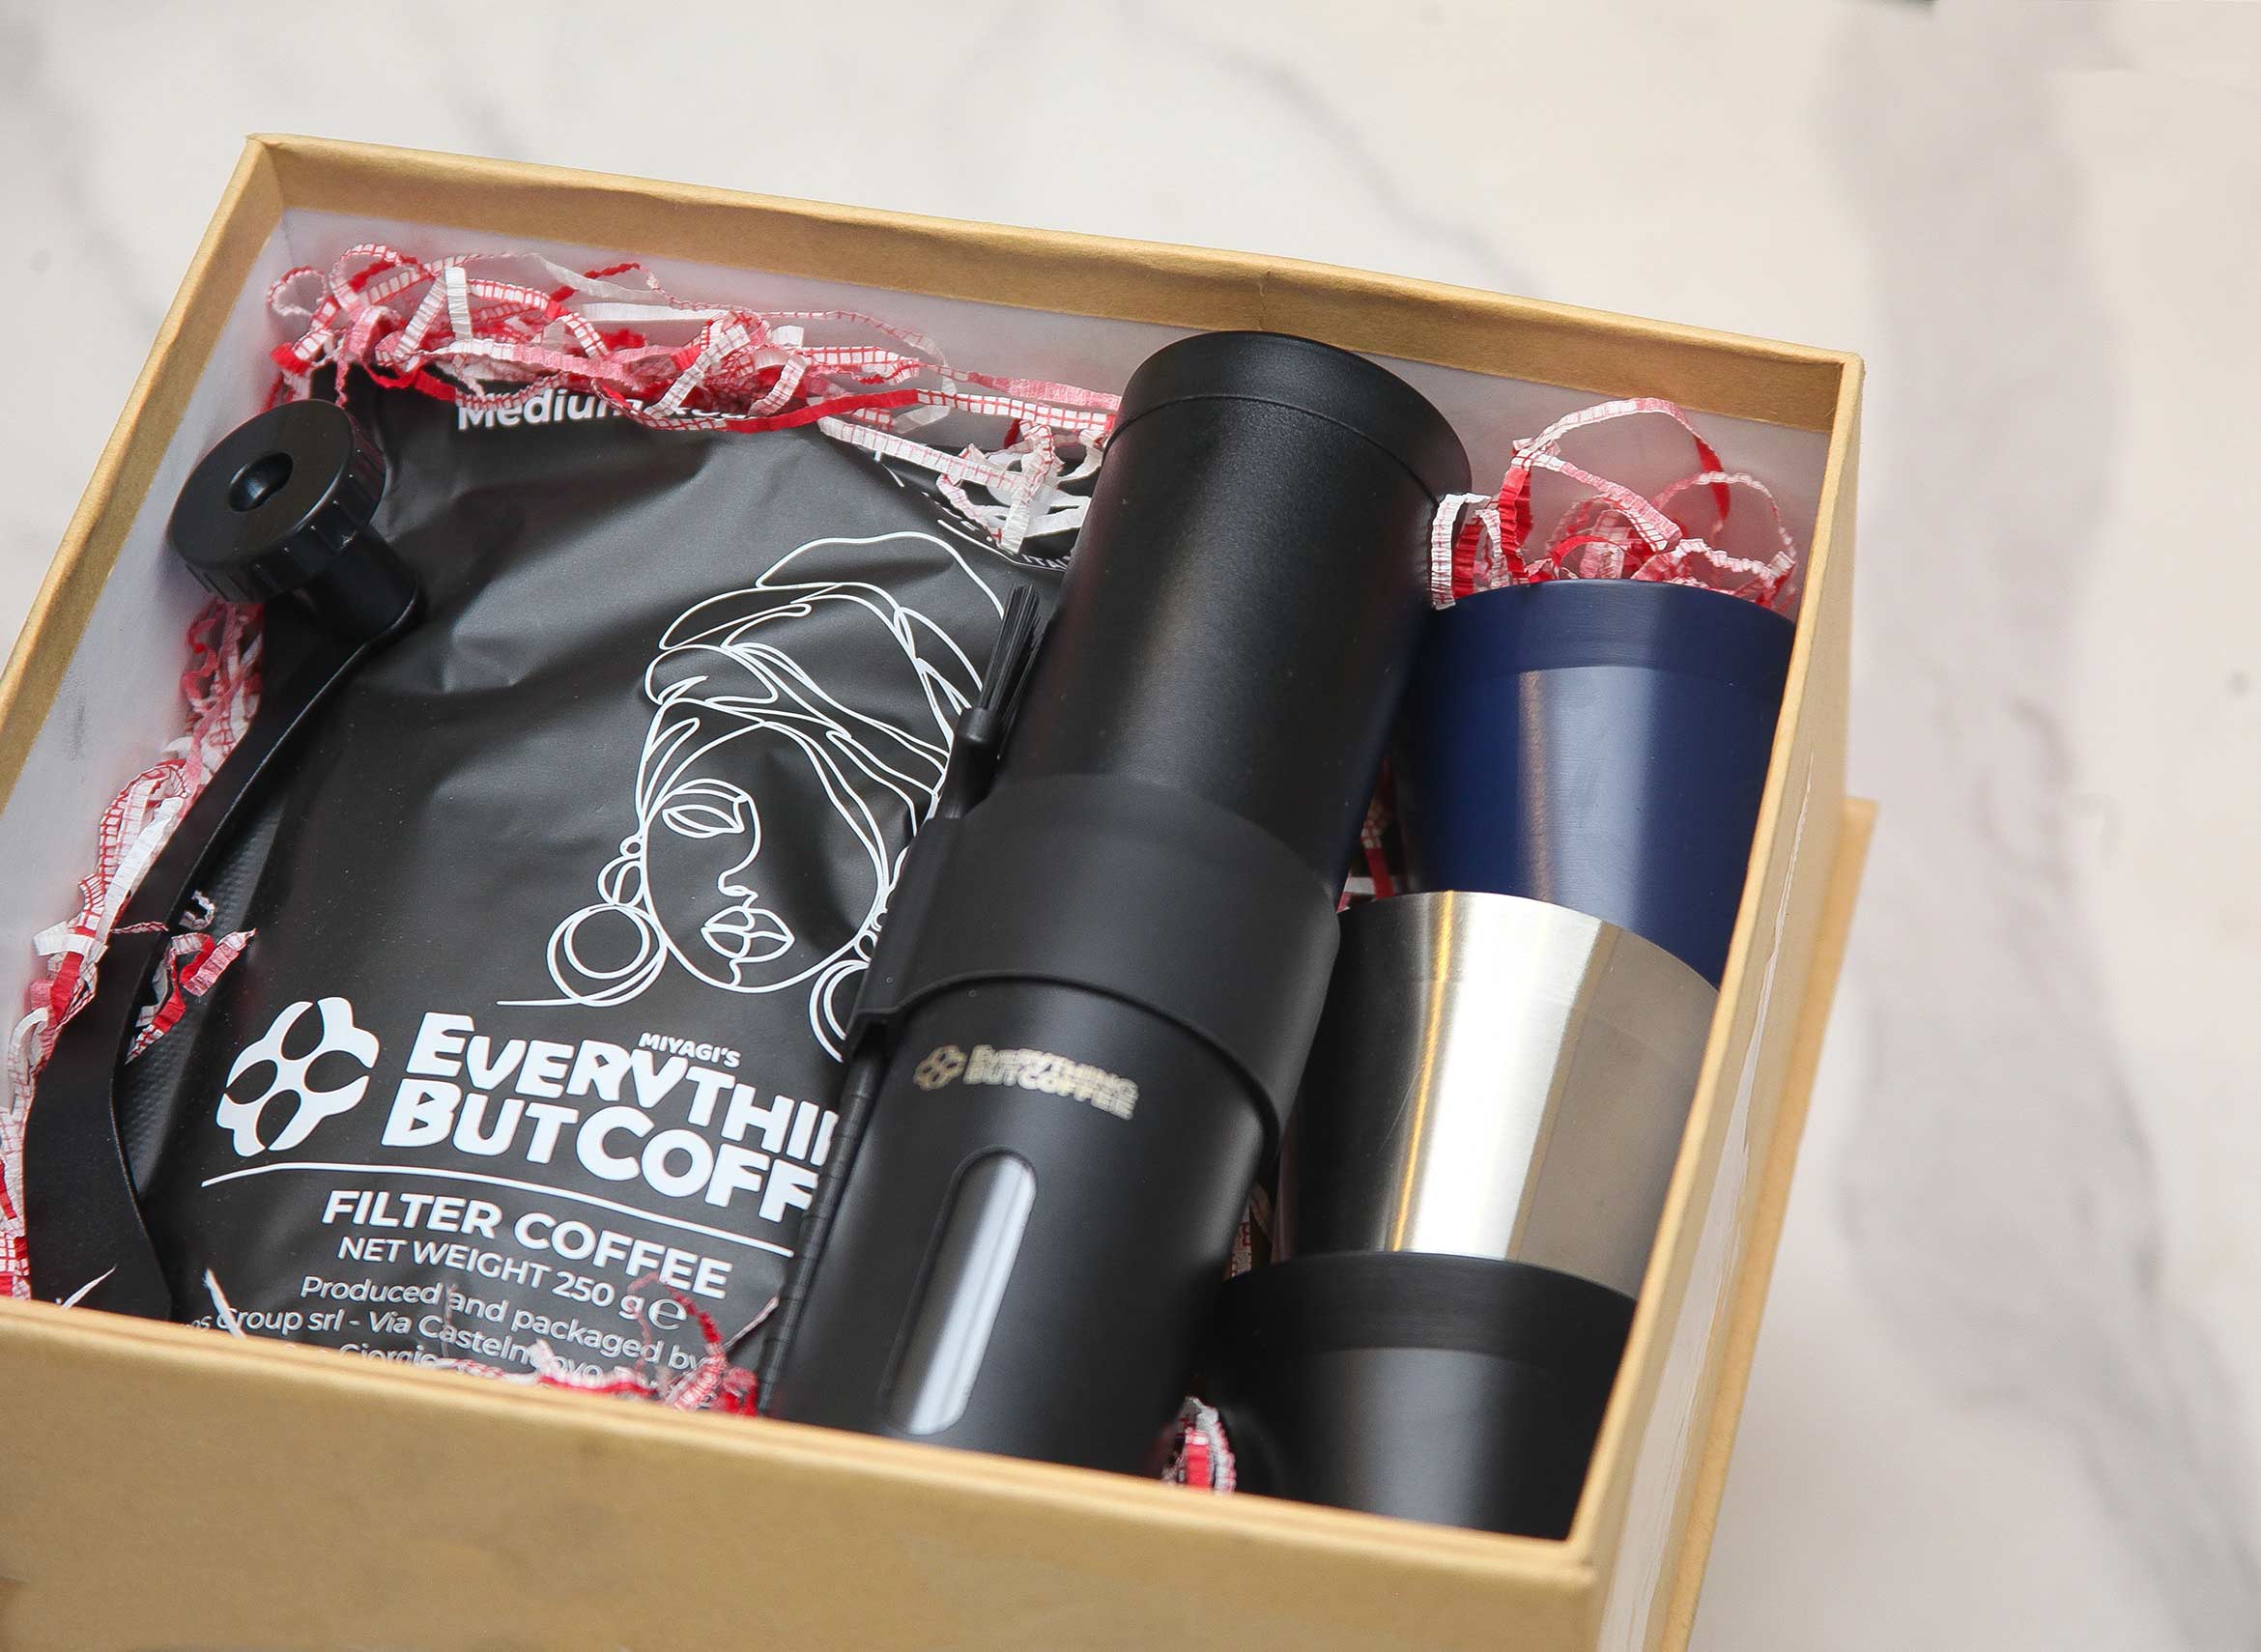 Splendor Custom Coffee Gift Set